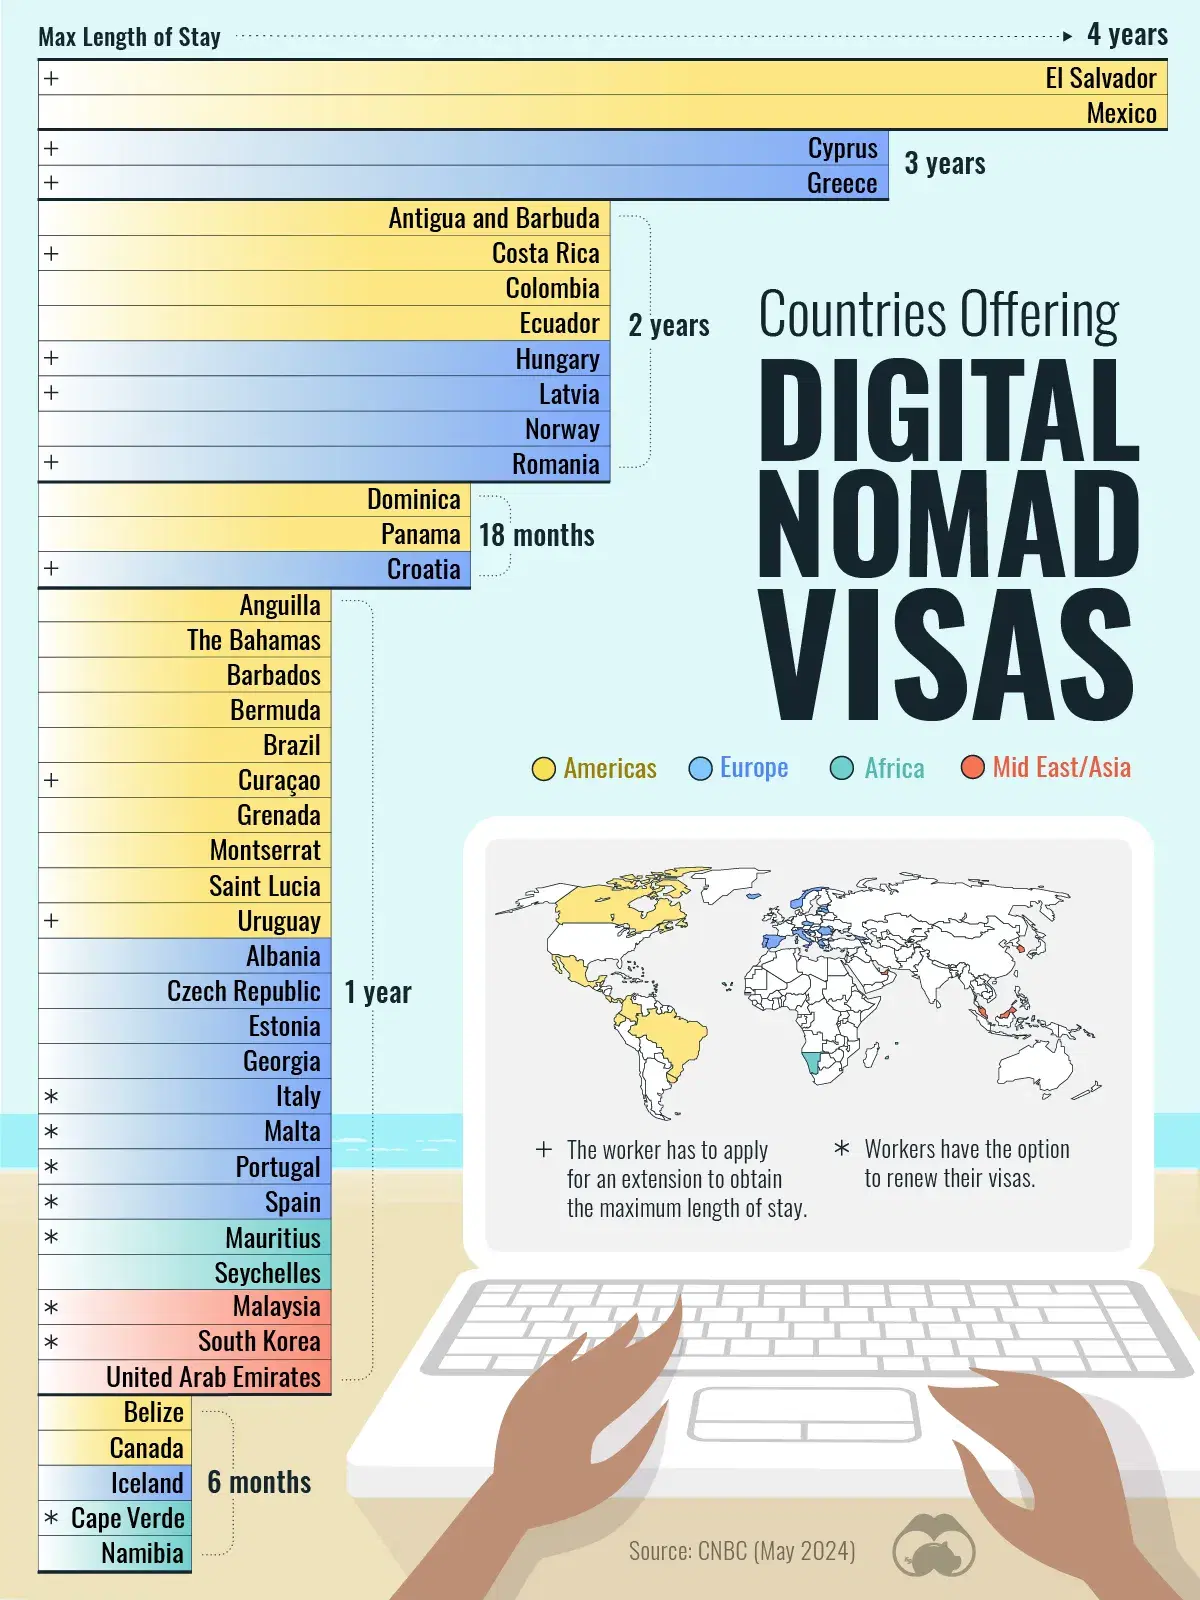 Mexico and El Salvador Offer the Longest Visa for Digital Nomads